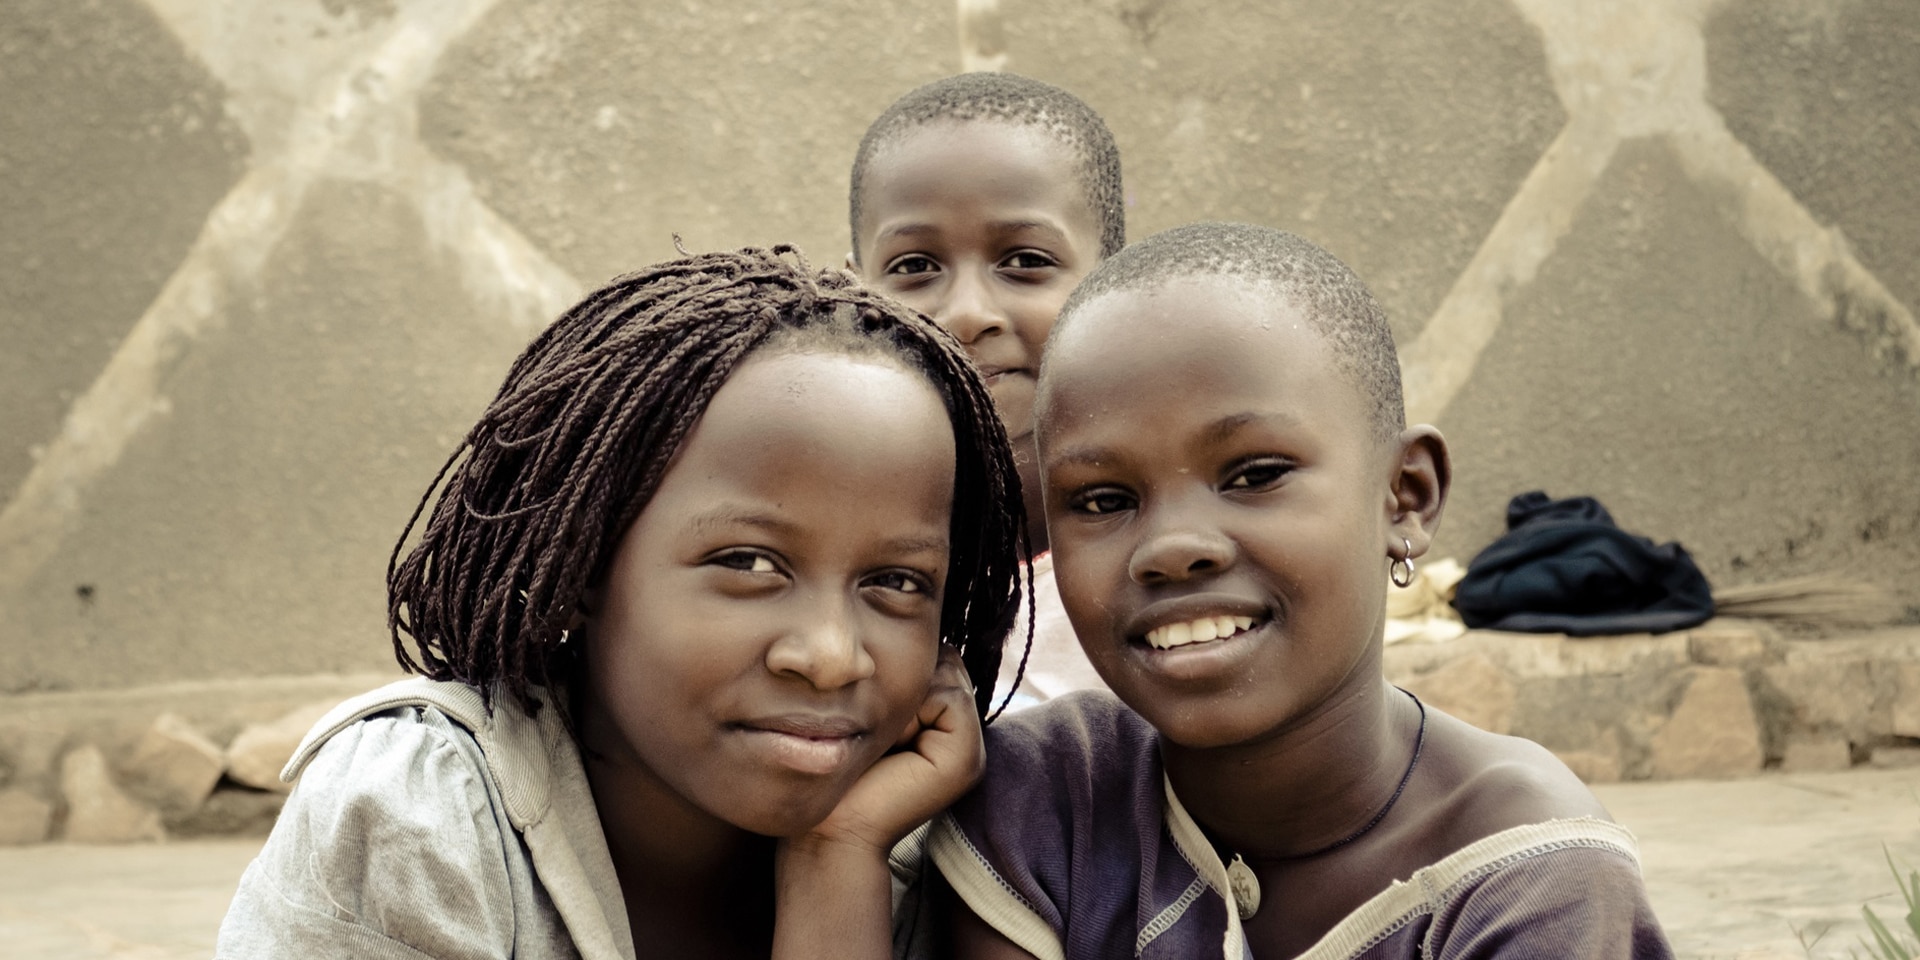 Drei Strassenkinder posieren in Kampala (Uganda) vor der Kamera.